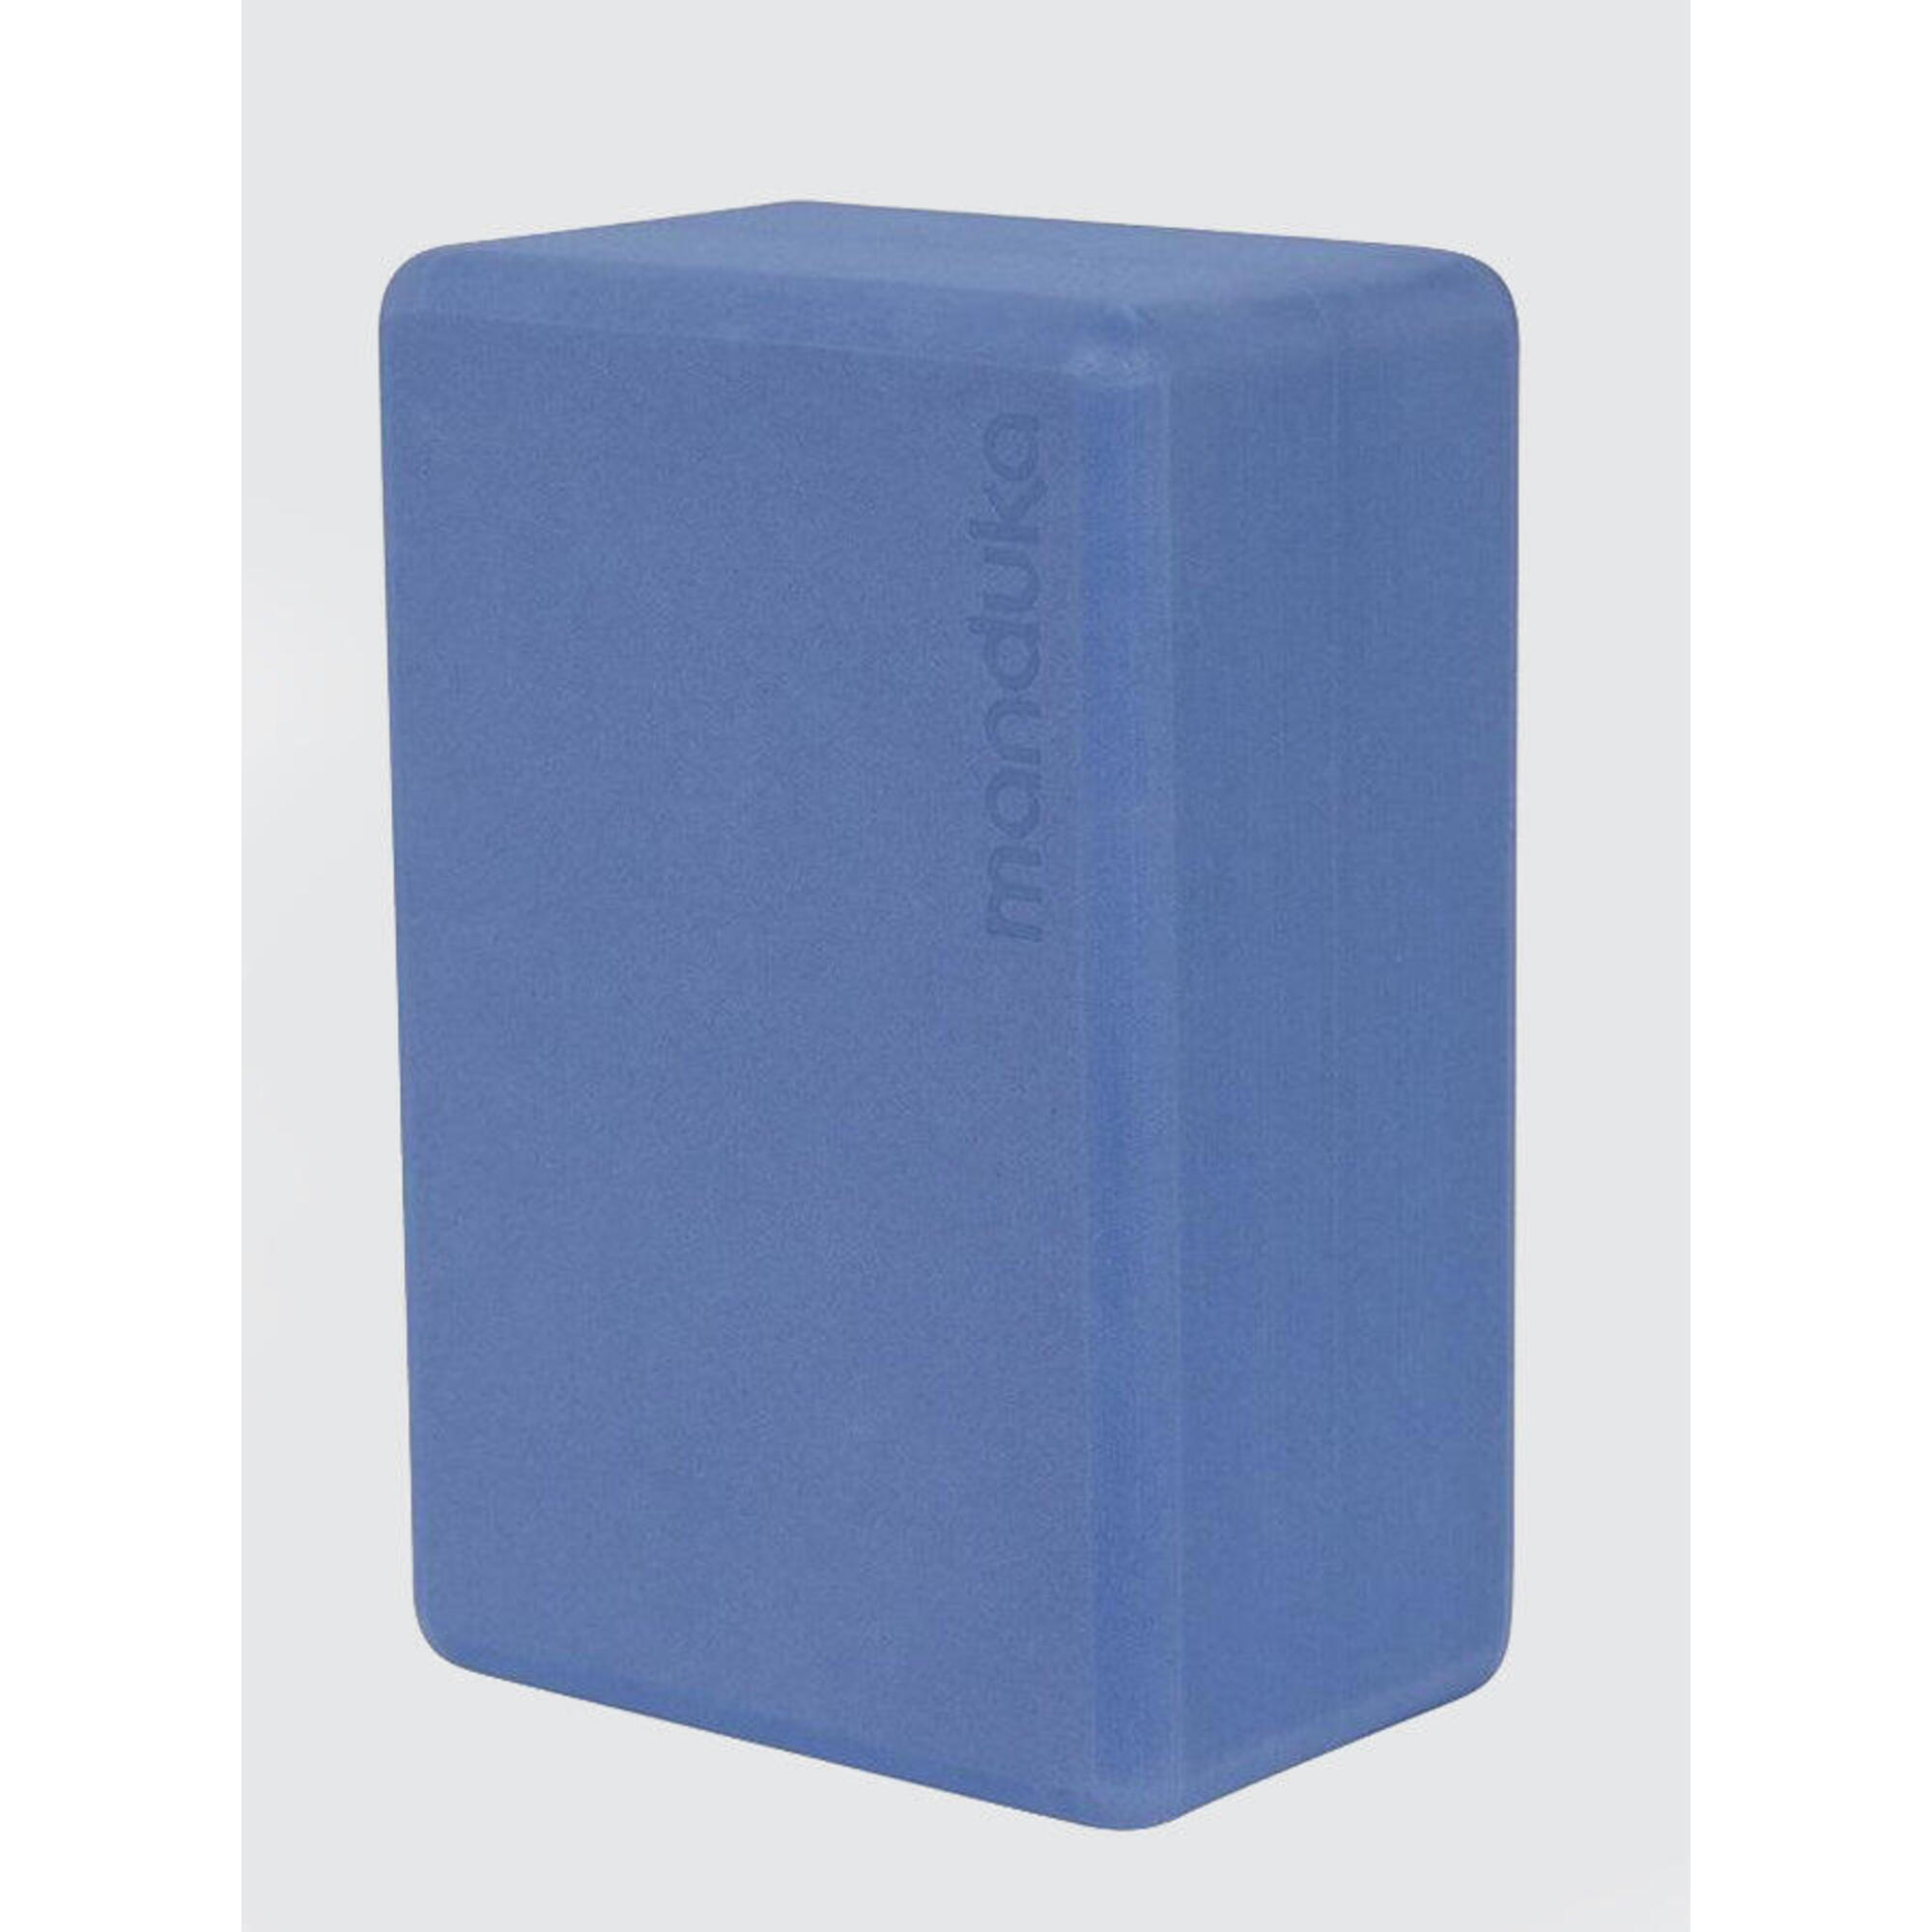 MANDUKA Manduka Recycled Foam Block - Shade Blue